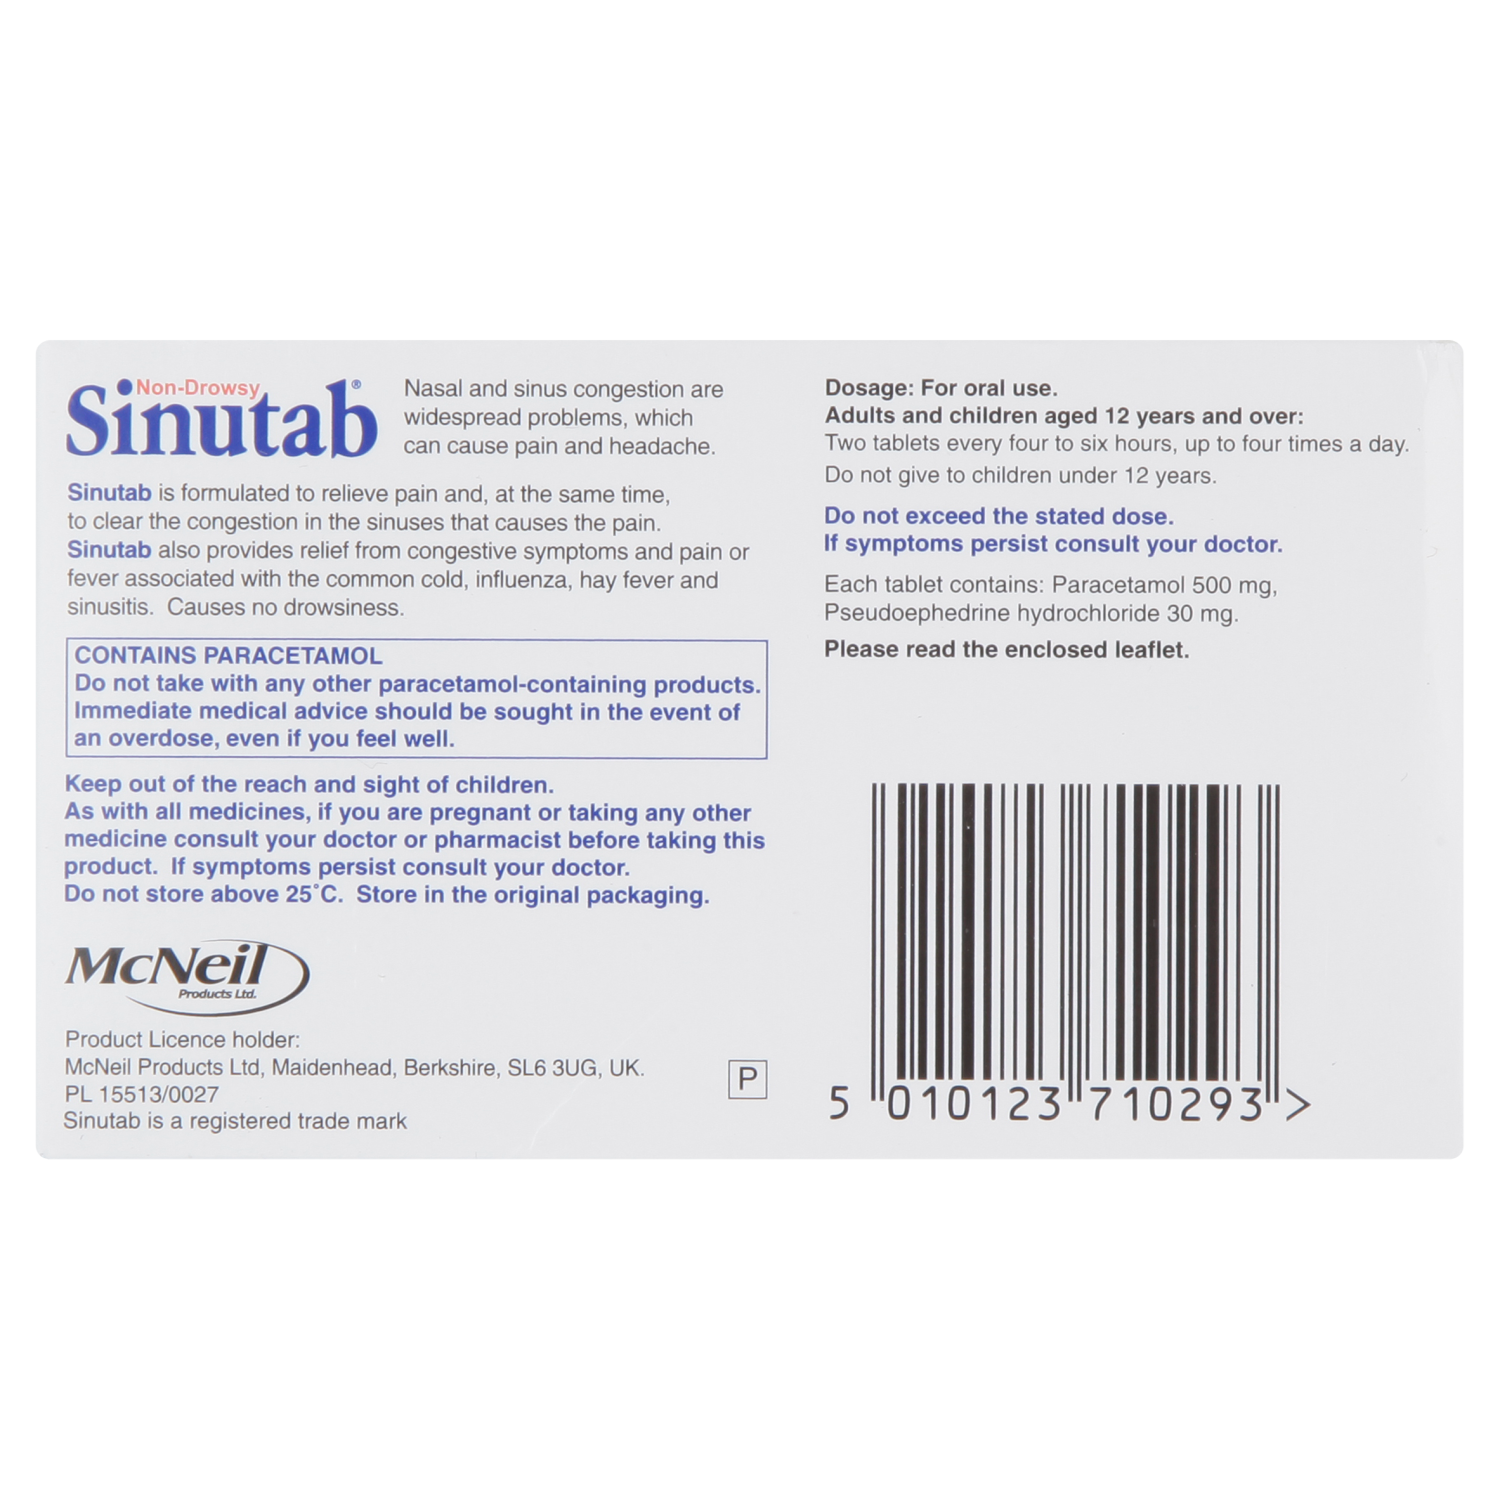 Sinutab (15 Tablets)